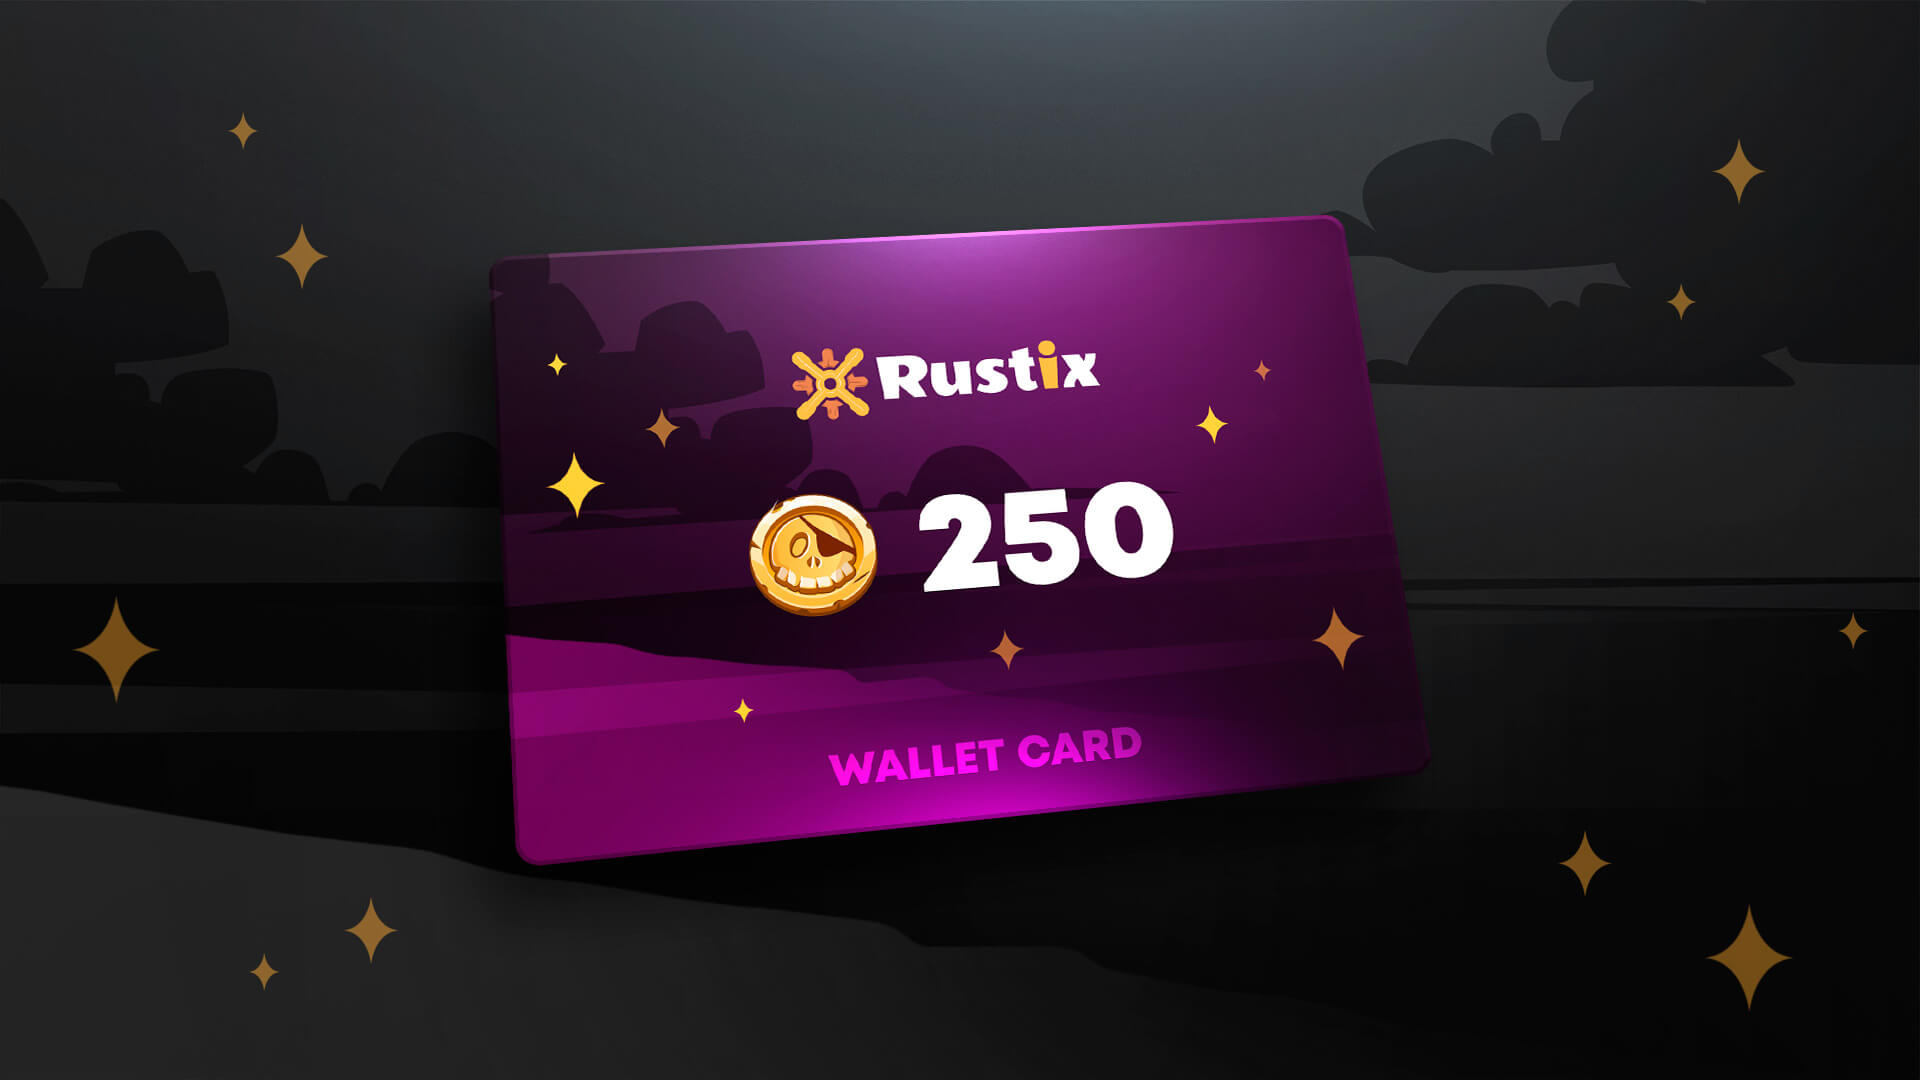 Rustix.io 250 USD Wallet Card Code $274.57